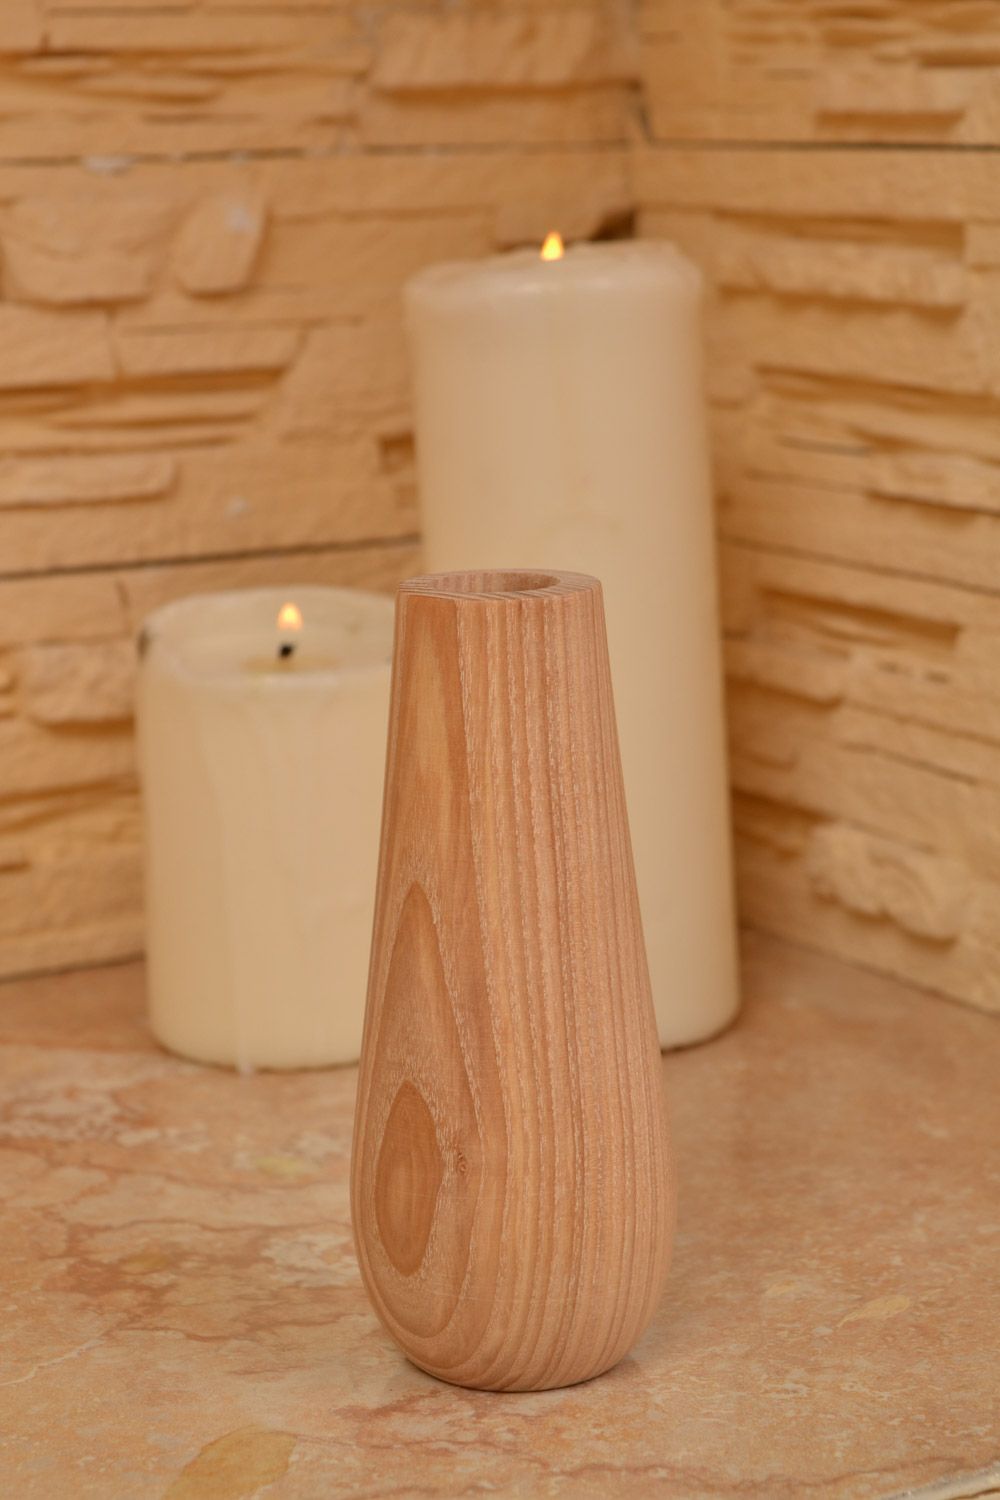 Подсвечник ручной работы из древесины клена под одну свечу диаметром 2 см фото 1